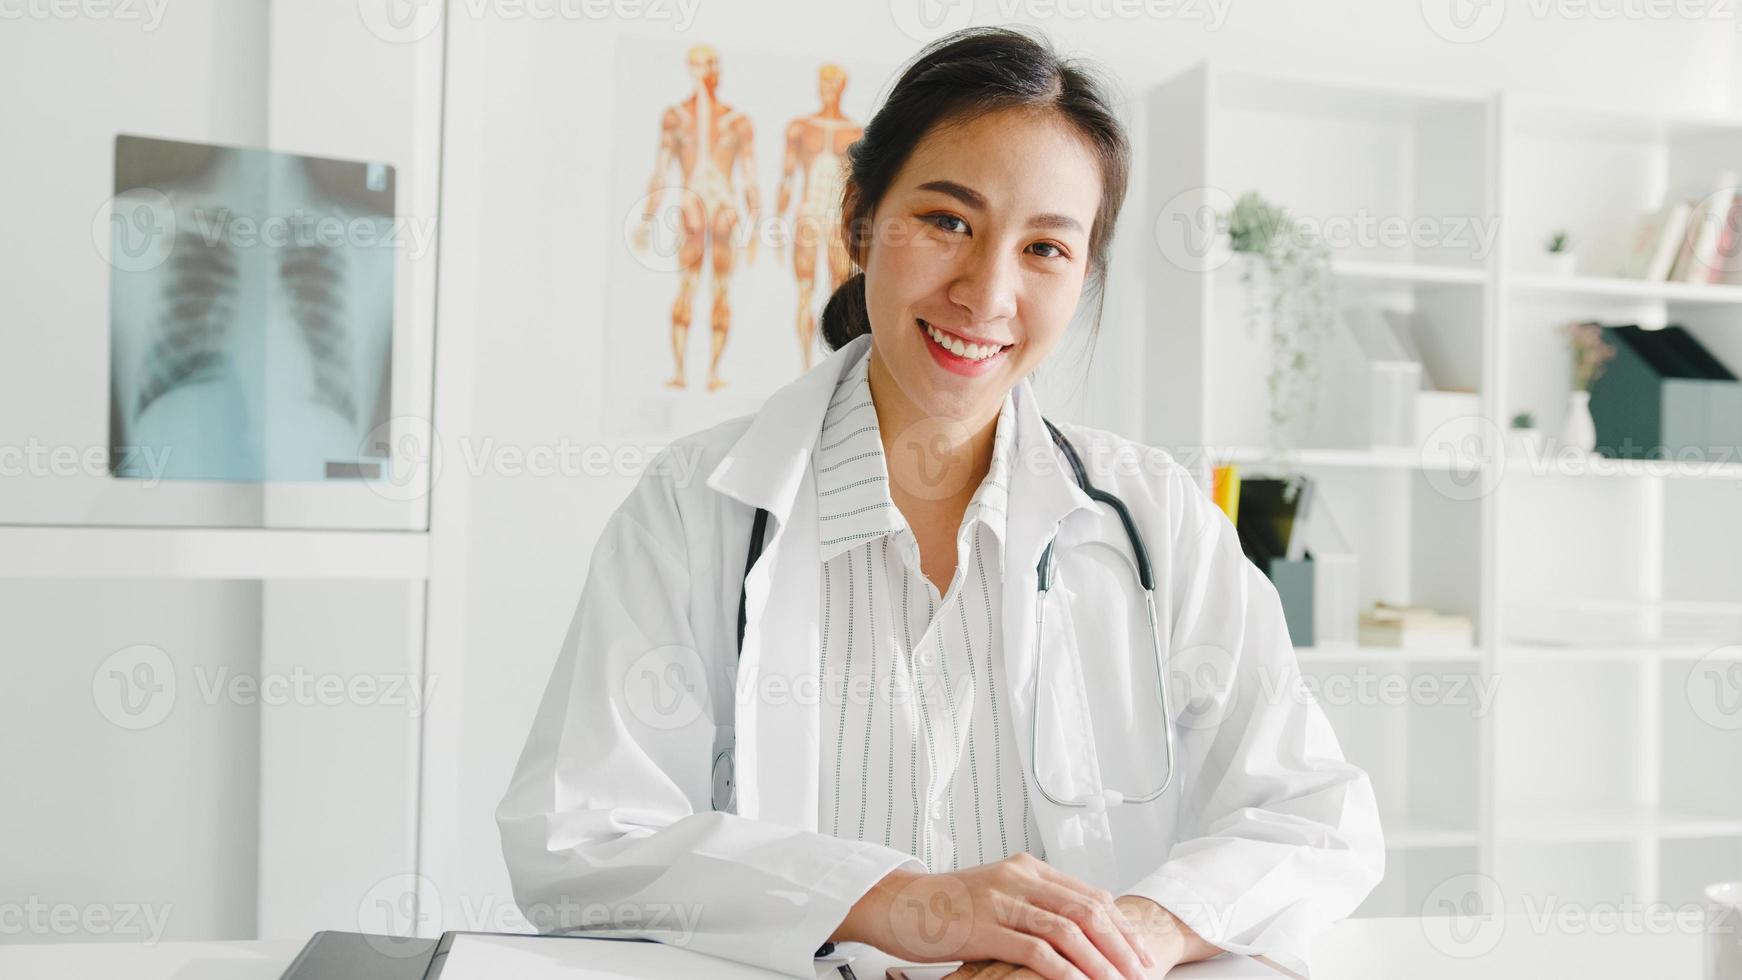 fiducioso giovane dottoressa asiatica in uniforme medica bianca con stetoscopio che guarda l'obbiettivo e sorride durante la videoconferenza con il paziente in ospedale. concetto di consulenza e terapia. foto